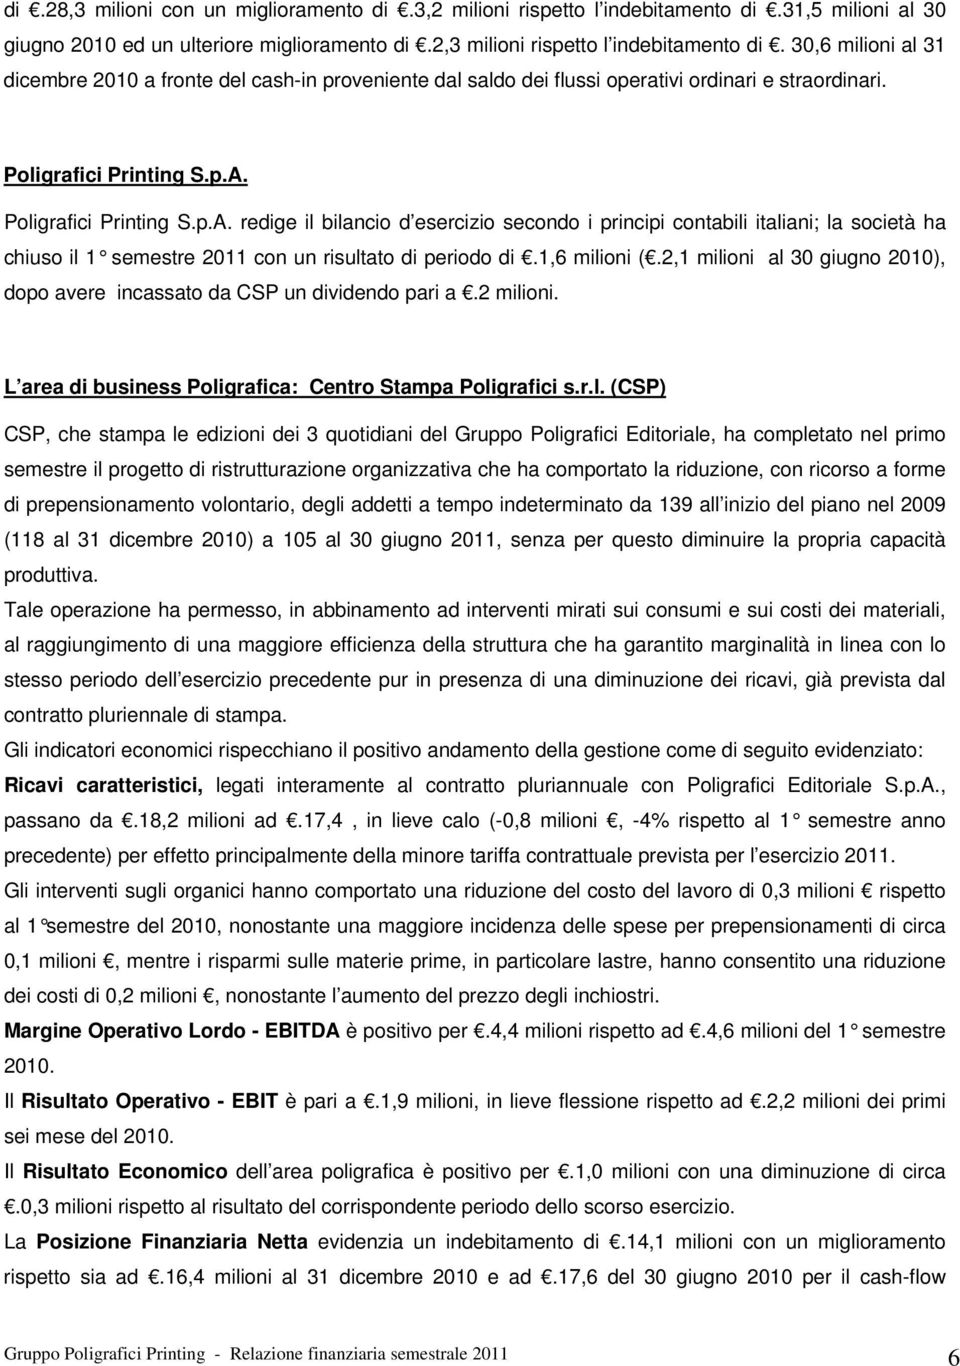 Poligrafici Printing S.p.A. redige il bilancio d esercizio secondo i principi contabili italiani; la società ha chiuso il 1 semestre 2011 con un risultato di periodo di.1,6 milioni (.